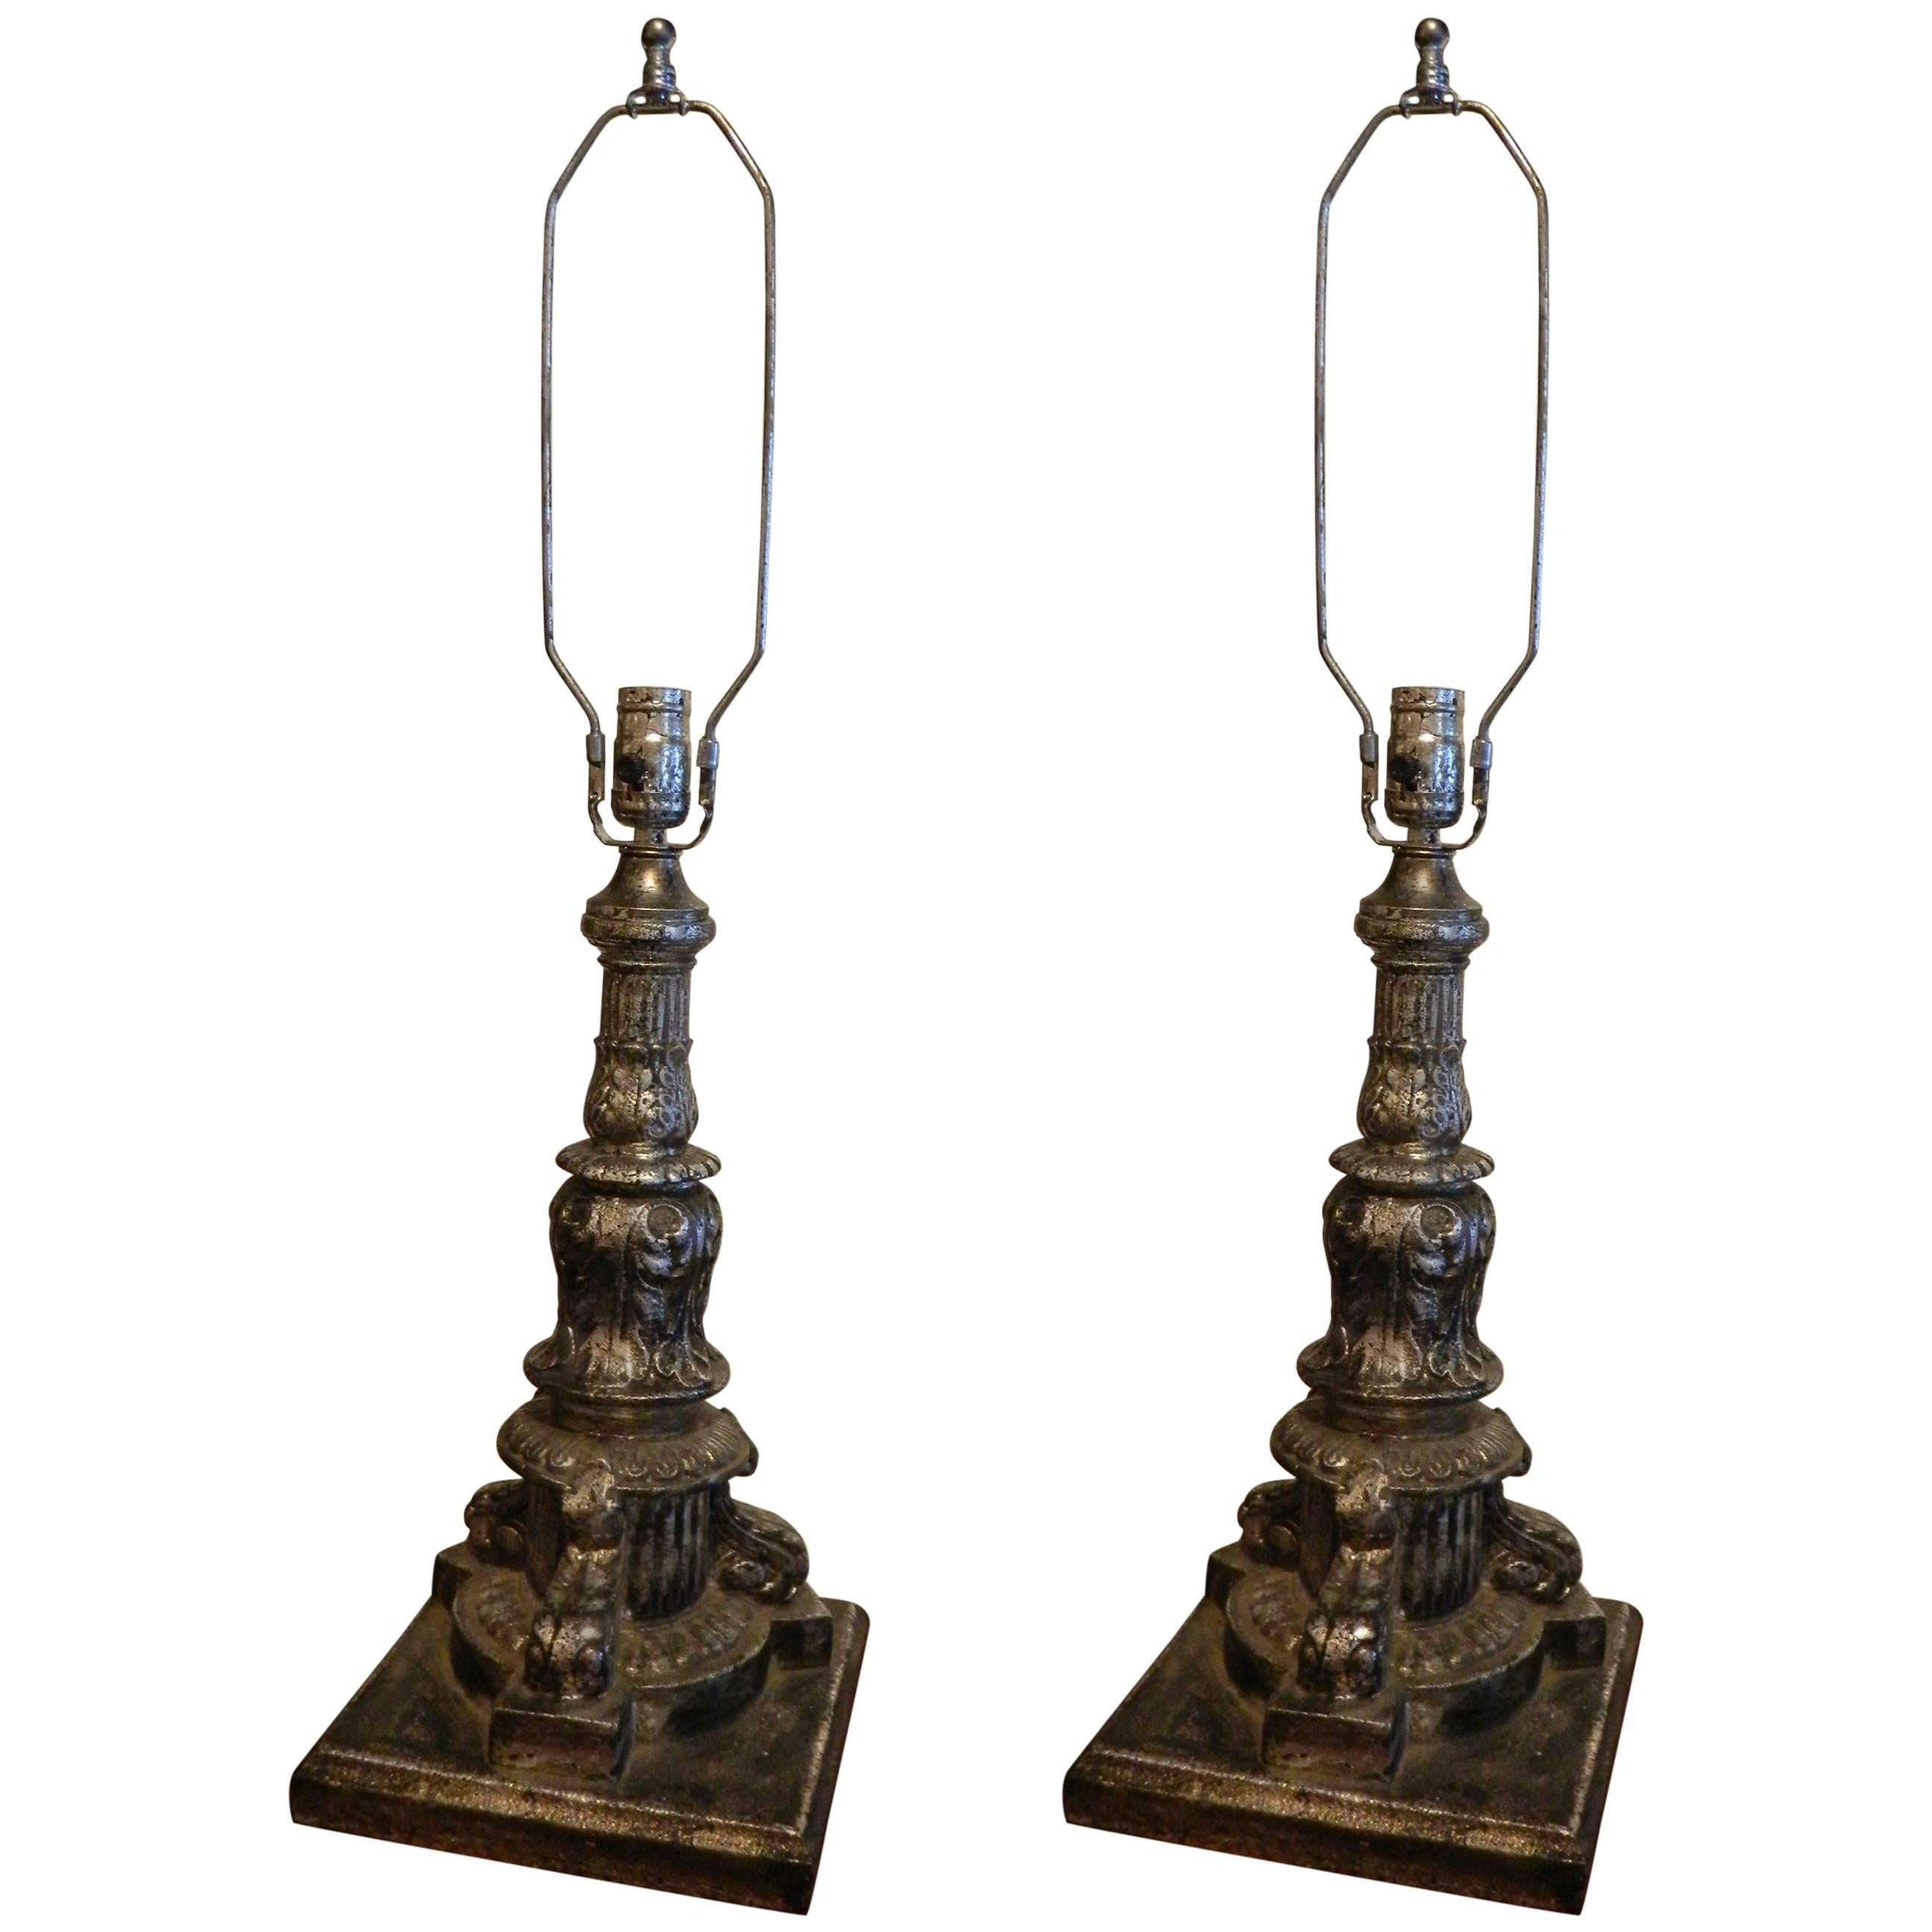 Paire d'éléments architecturaux en fer et feuille d'argent adaptés comme lampes, 19ème siècle